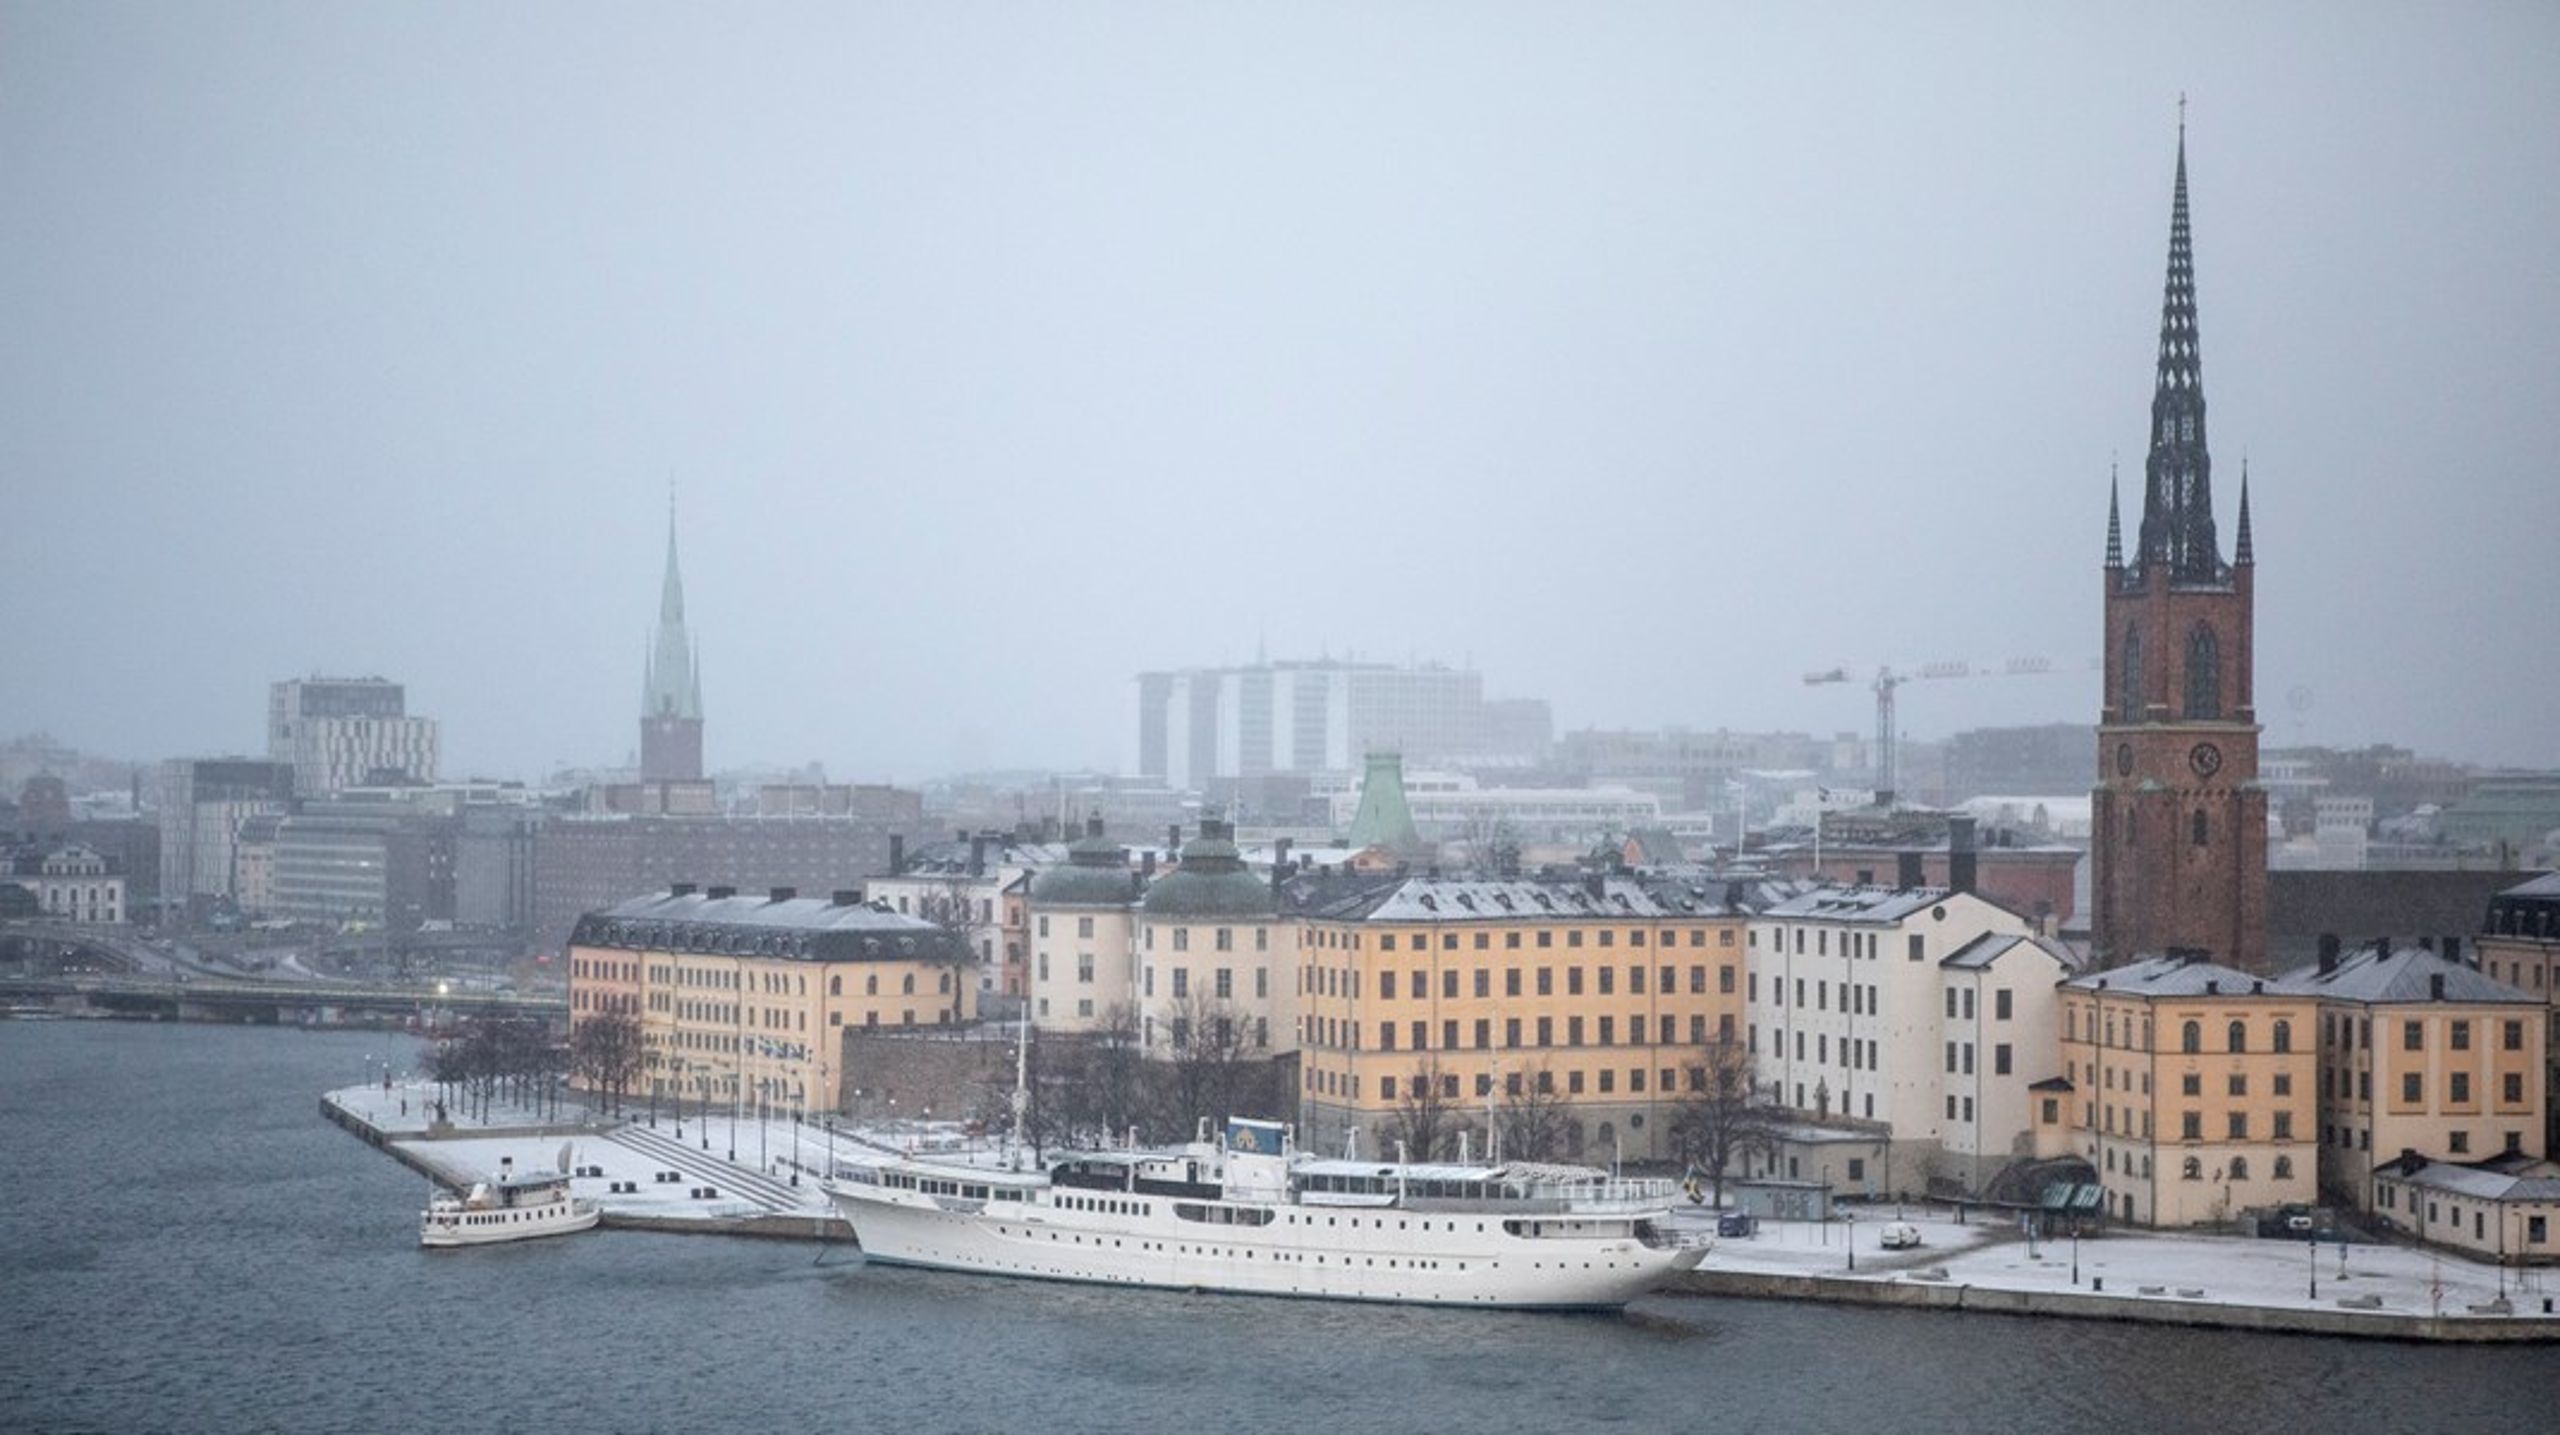 Det nya styret i Region Stockholm vill flytta&nbsp;makt från patienter och resenärer till politiker, skriver debattören.&nbsp;